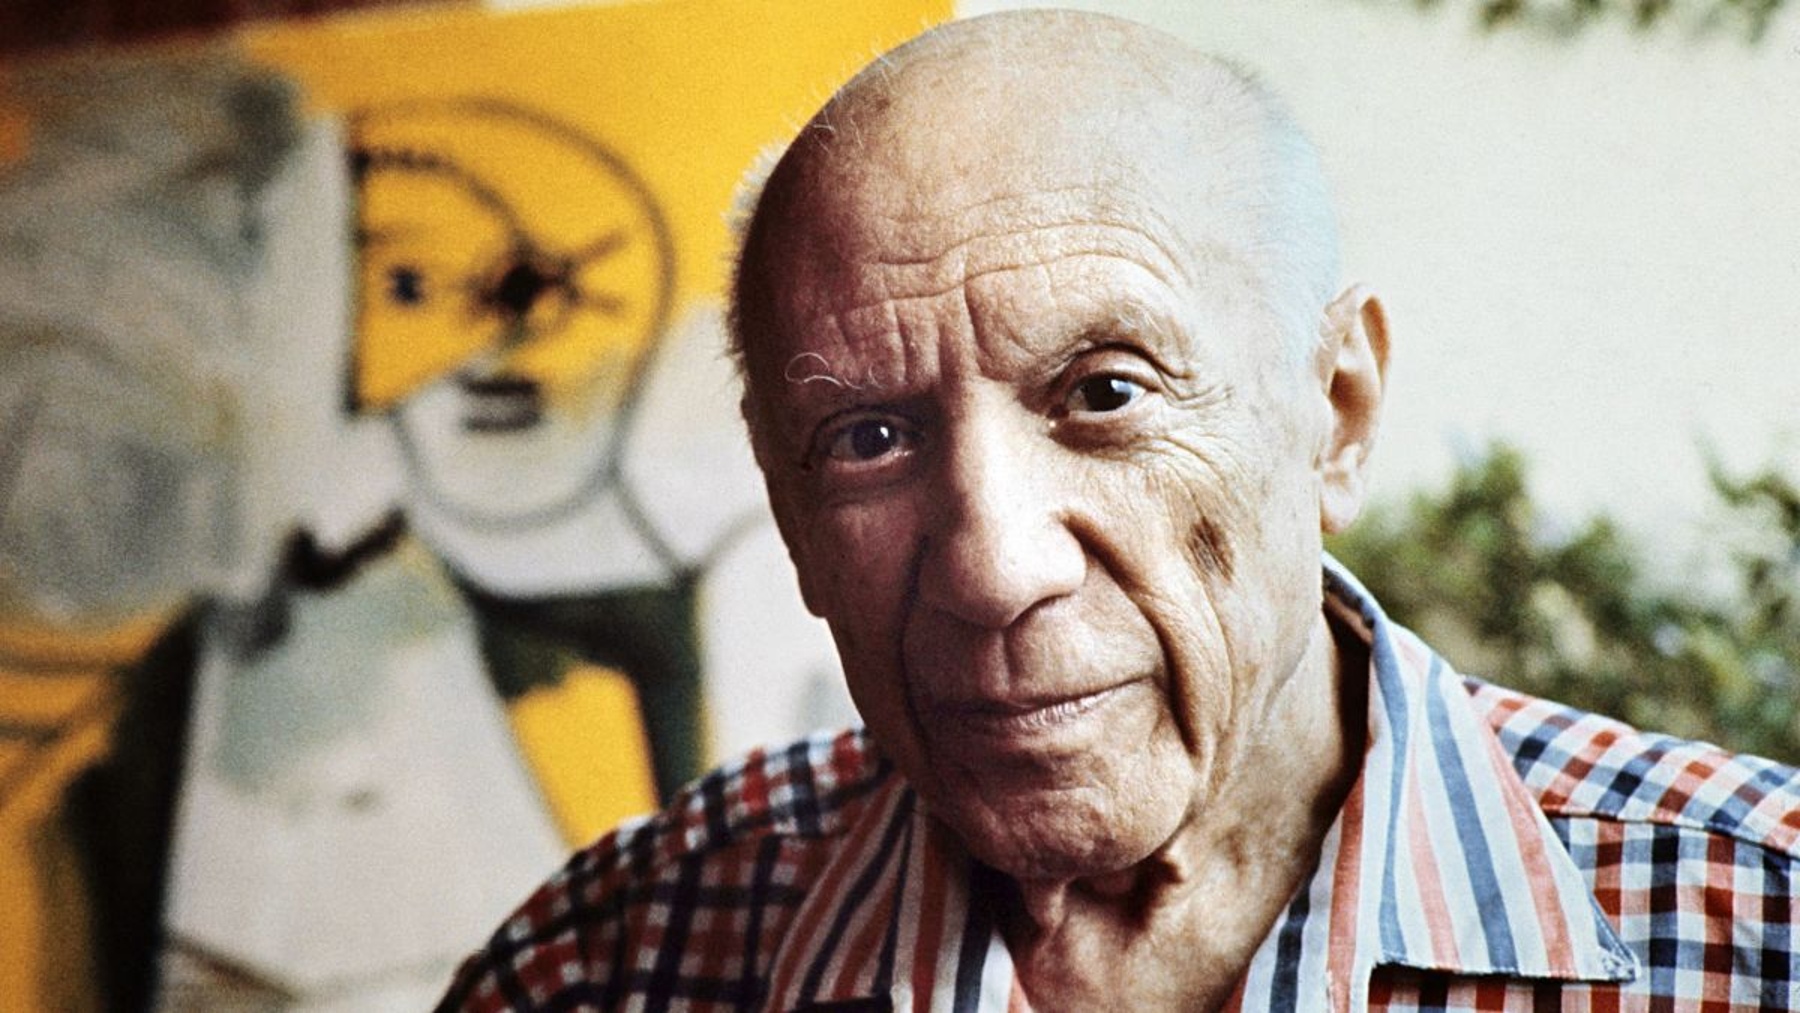 El pintor malagueño Pablo Picasso.